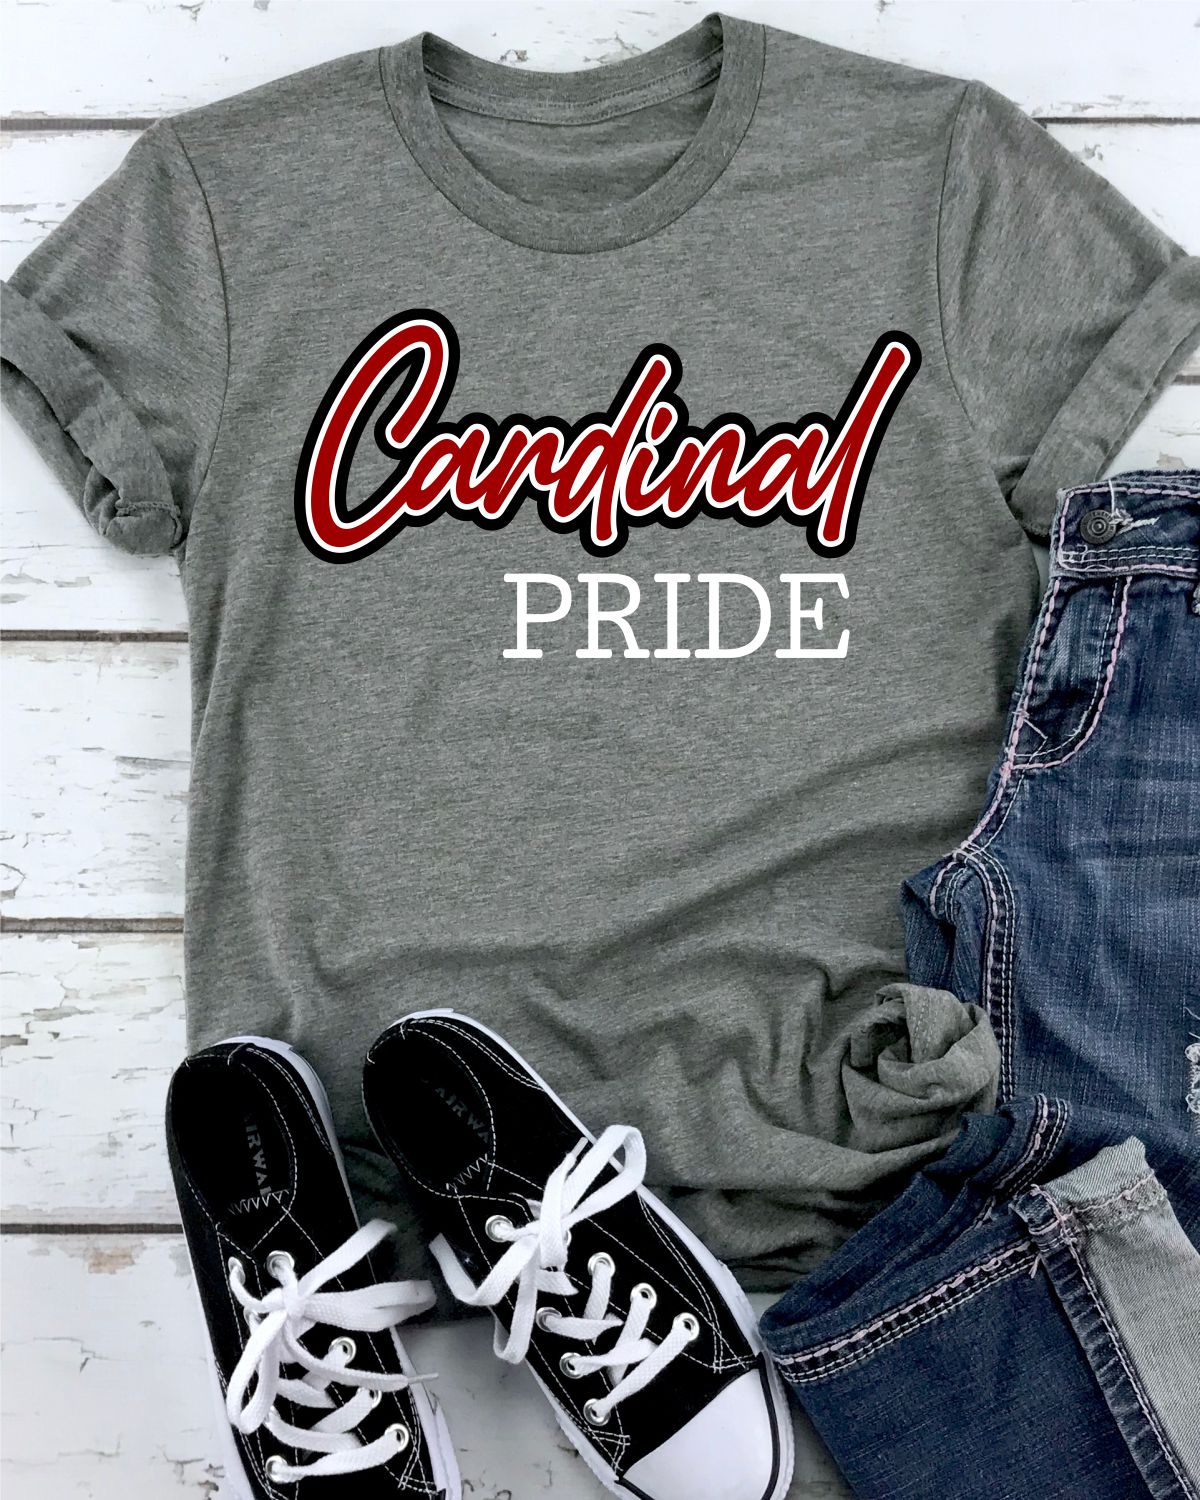 Cardinal Pride Shirt 